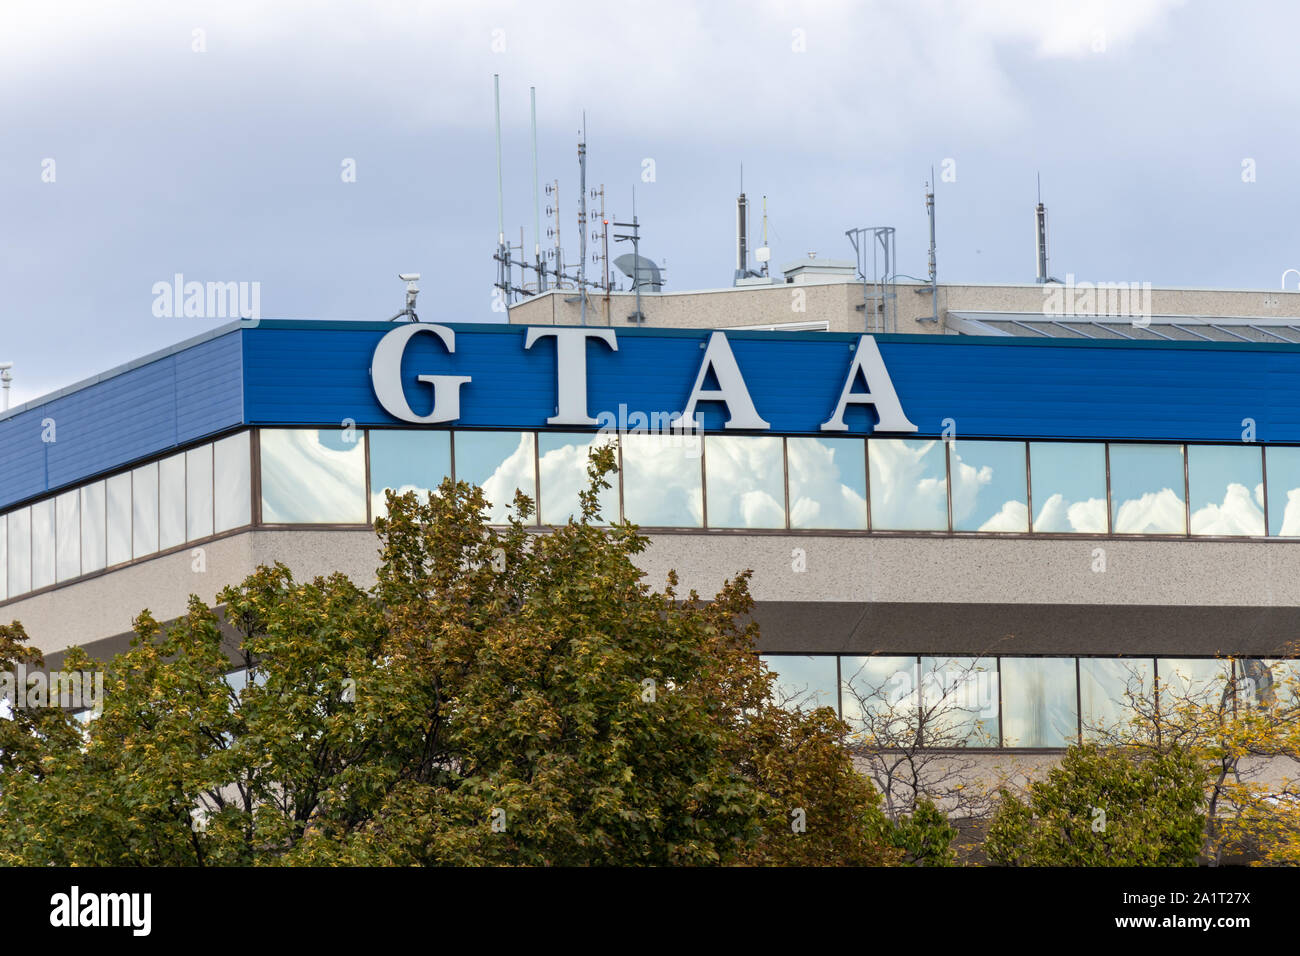 GTAA (Greater Toronto Aereoporti Authority), edificio di uffici presso Toronto Pearson Intl. Aeroporto. Foto Stock